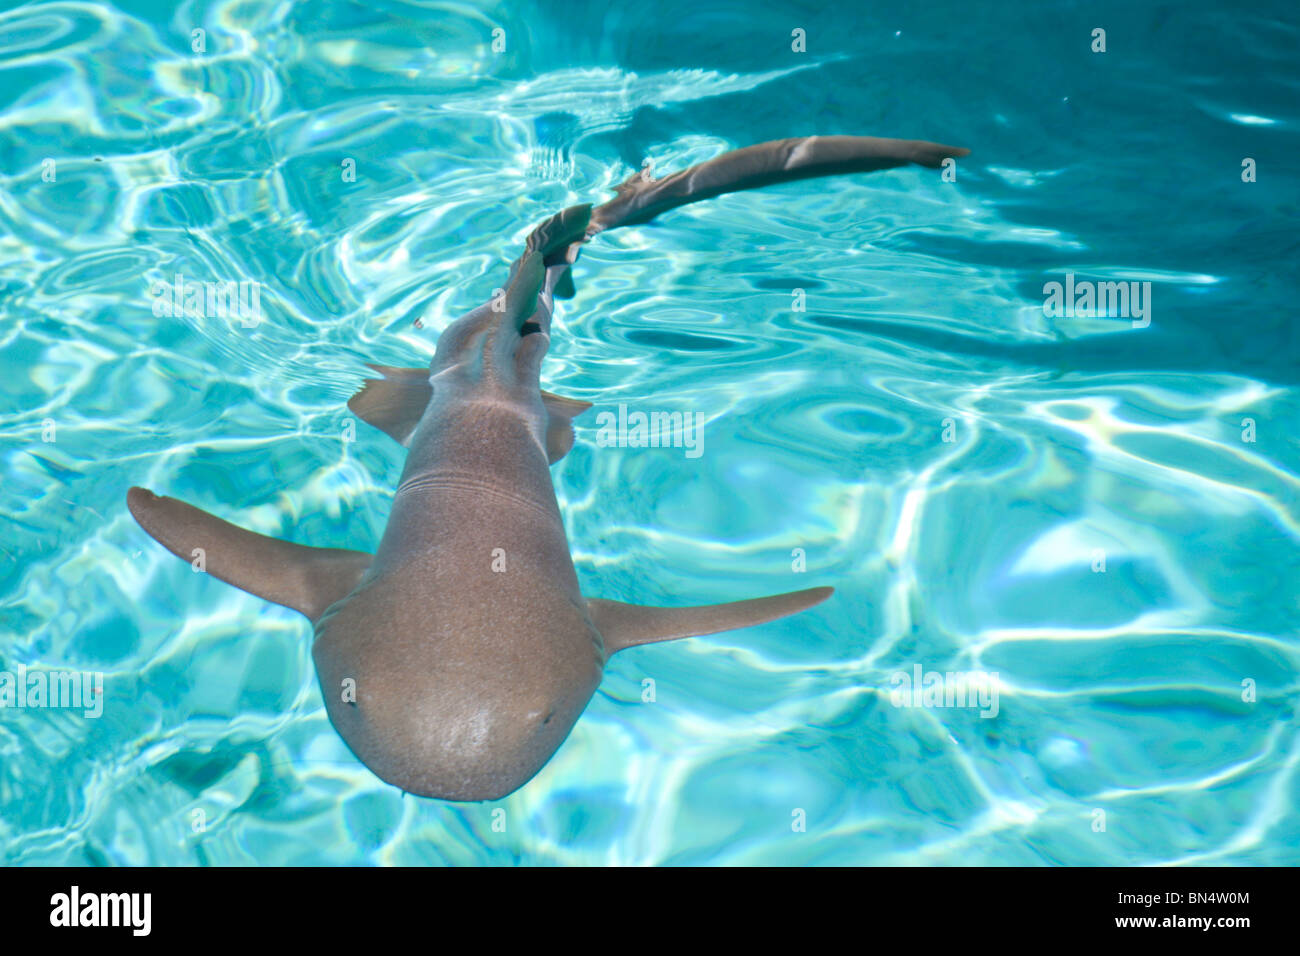 A nurse shark at Staniel cay in the Bahamas. Stock Photo